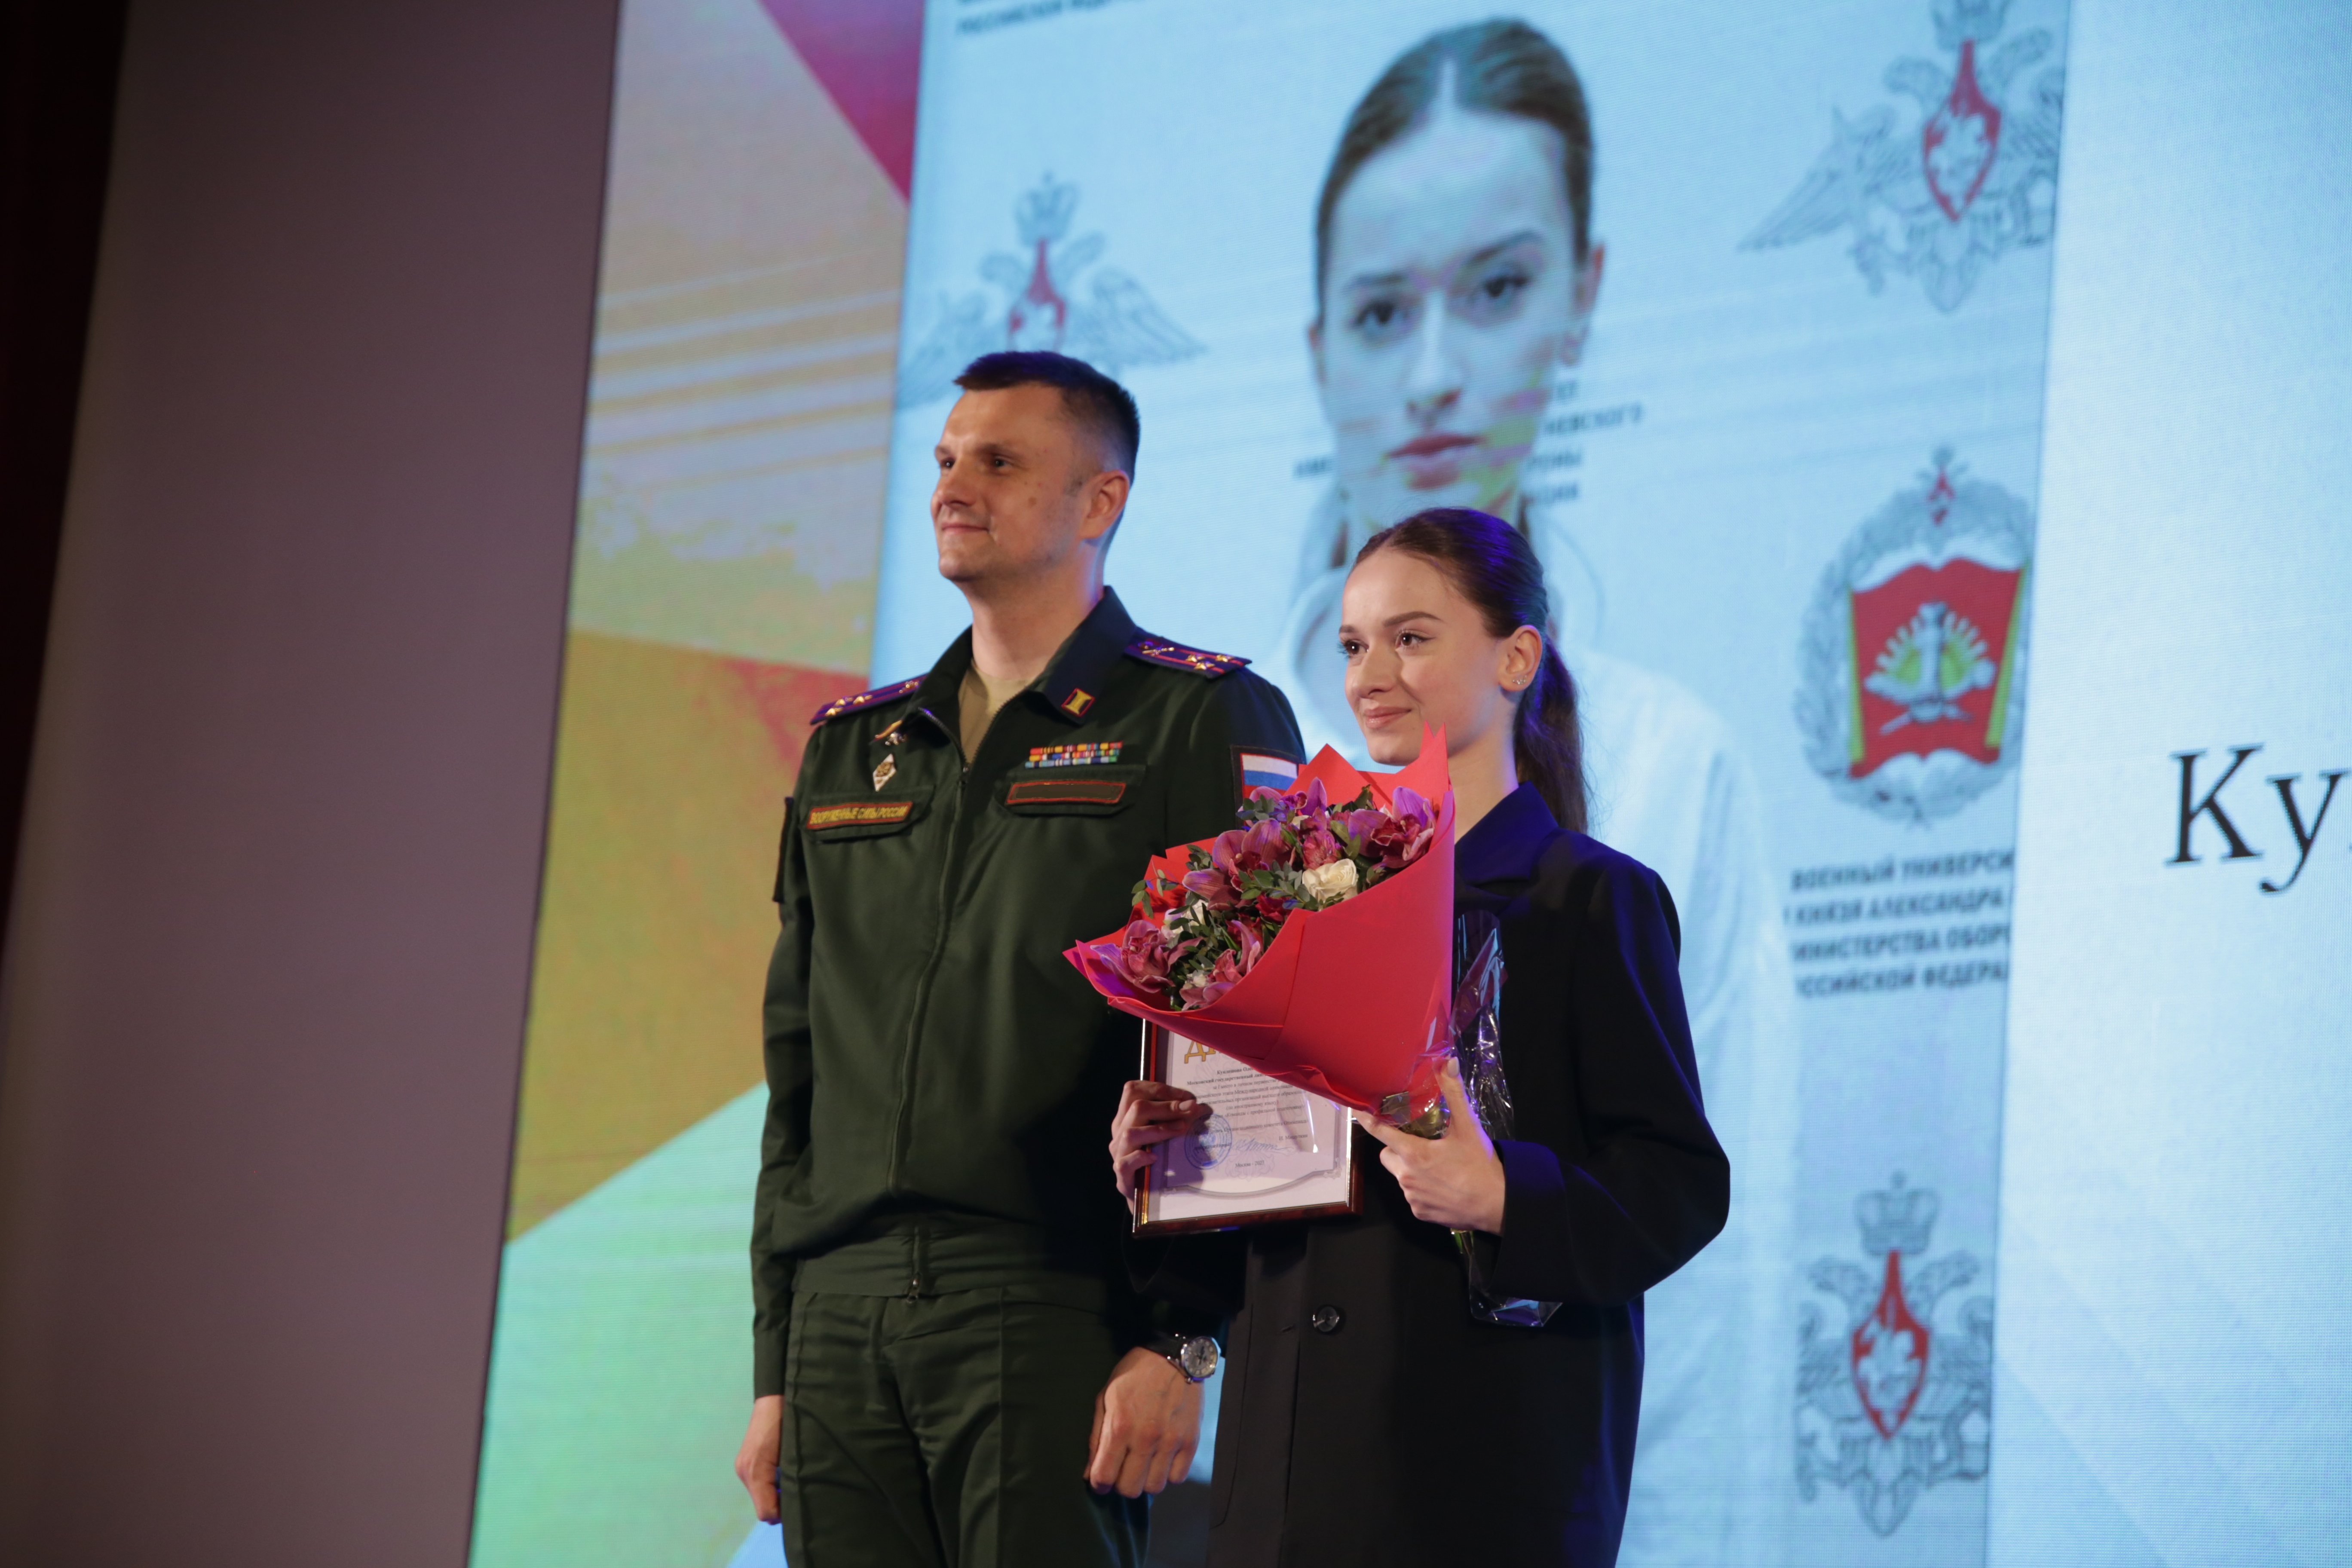 Студенты Военного учебного центра МГЛУ одержали уверенную победу на Всеармейском этапе Международной олимпиады курсантов  по иностранному языку